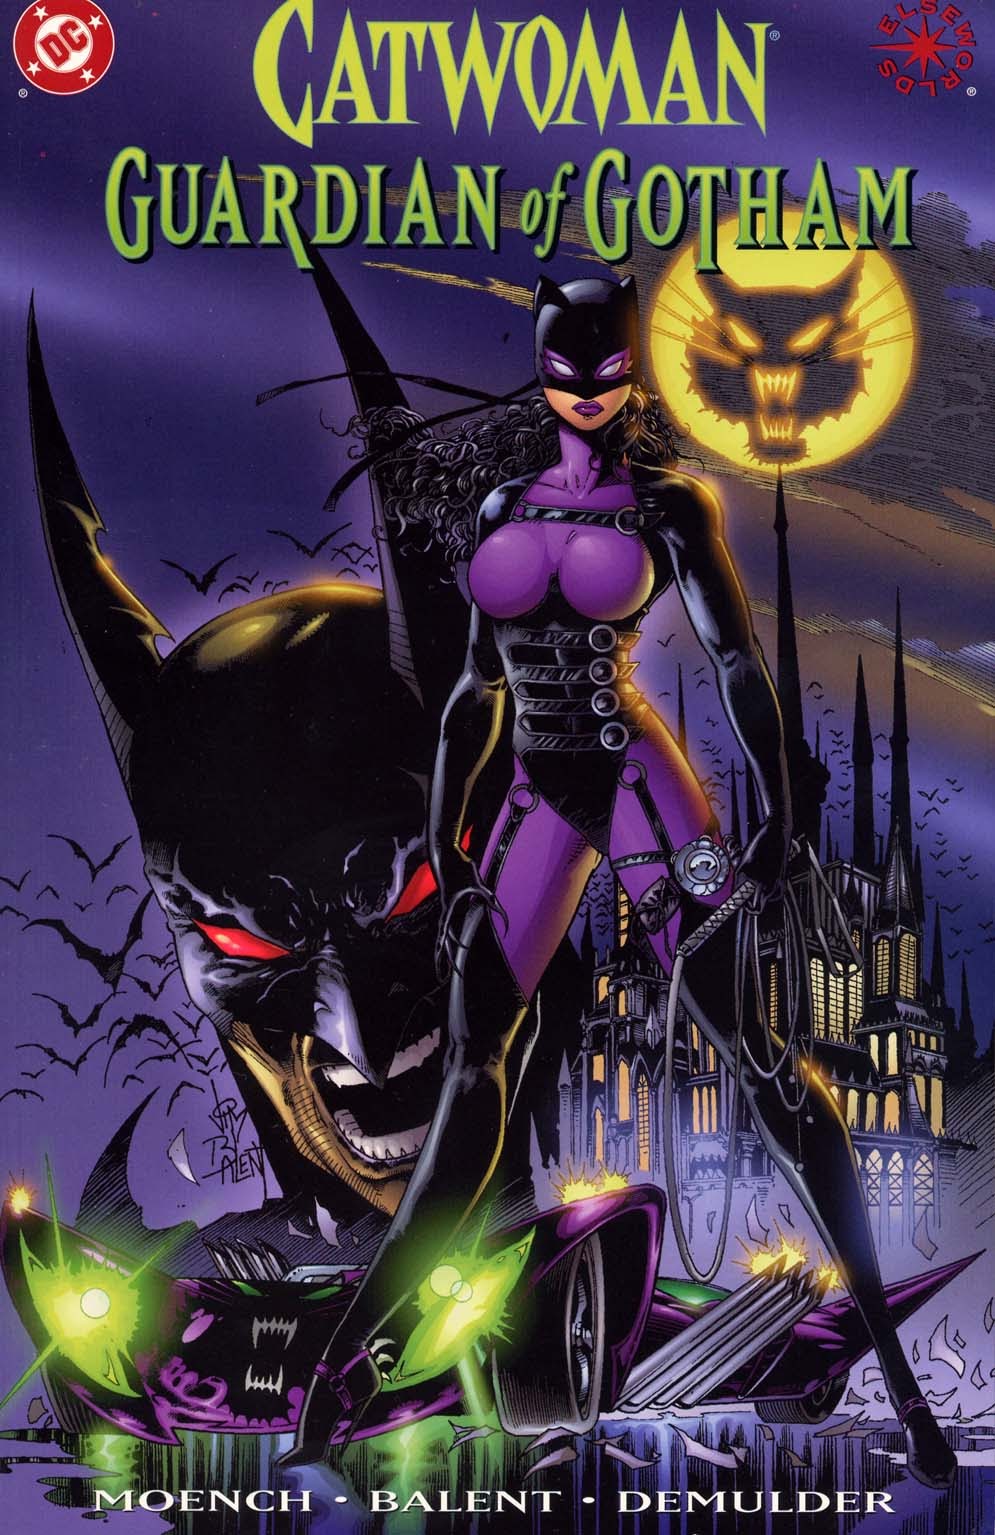 Inenarrable, una vez más, portada. Esta vez es de Catwoman: Guardian of Gotham y con el sello Elseworlds. En ella vemos a Catwoman en el centro, detrás está la mansión Wa... Kyle, y el Catmóvil. Arriba está la Cat Señal. Y detrás está Batman con pinta de ser un demonio asesino. Catwoman ocupa el centro con un modelito imposible incluyendo un corsé que parece pensado para que se saque las tetas como balones. 